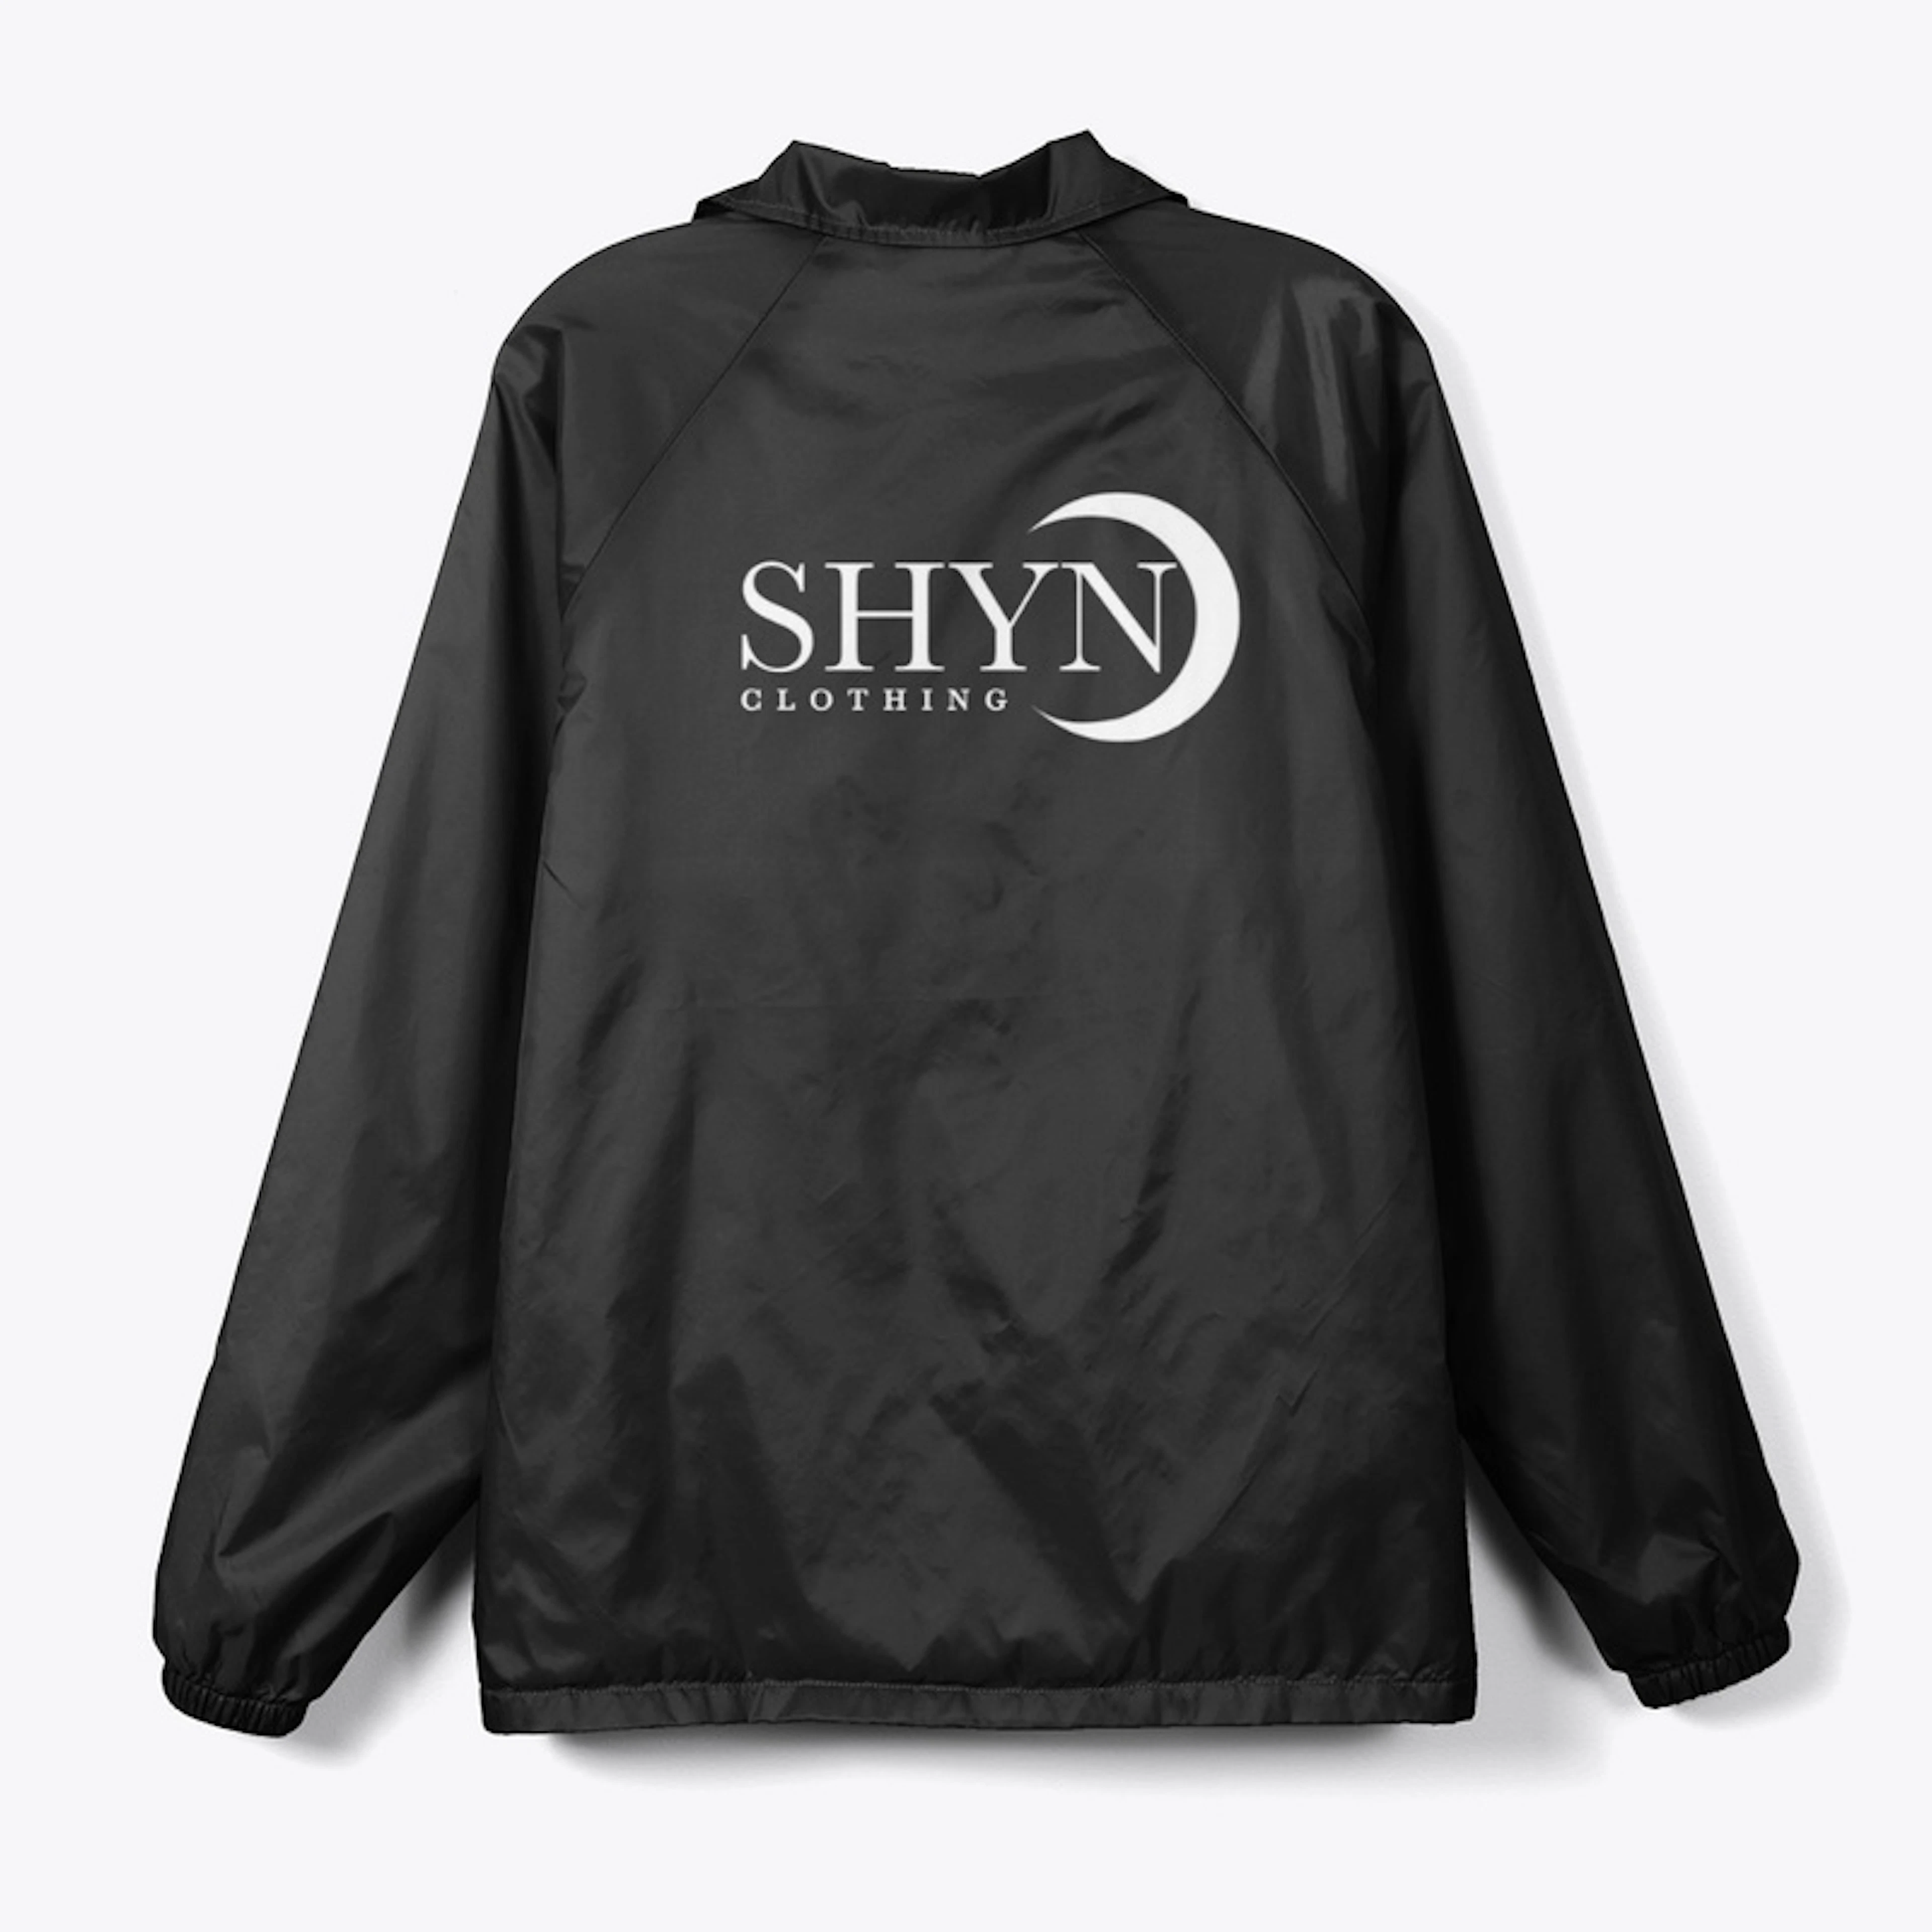 Shyn Clothing Jackets